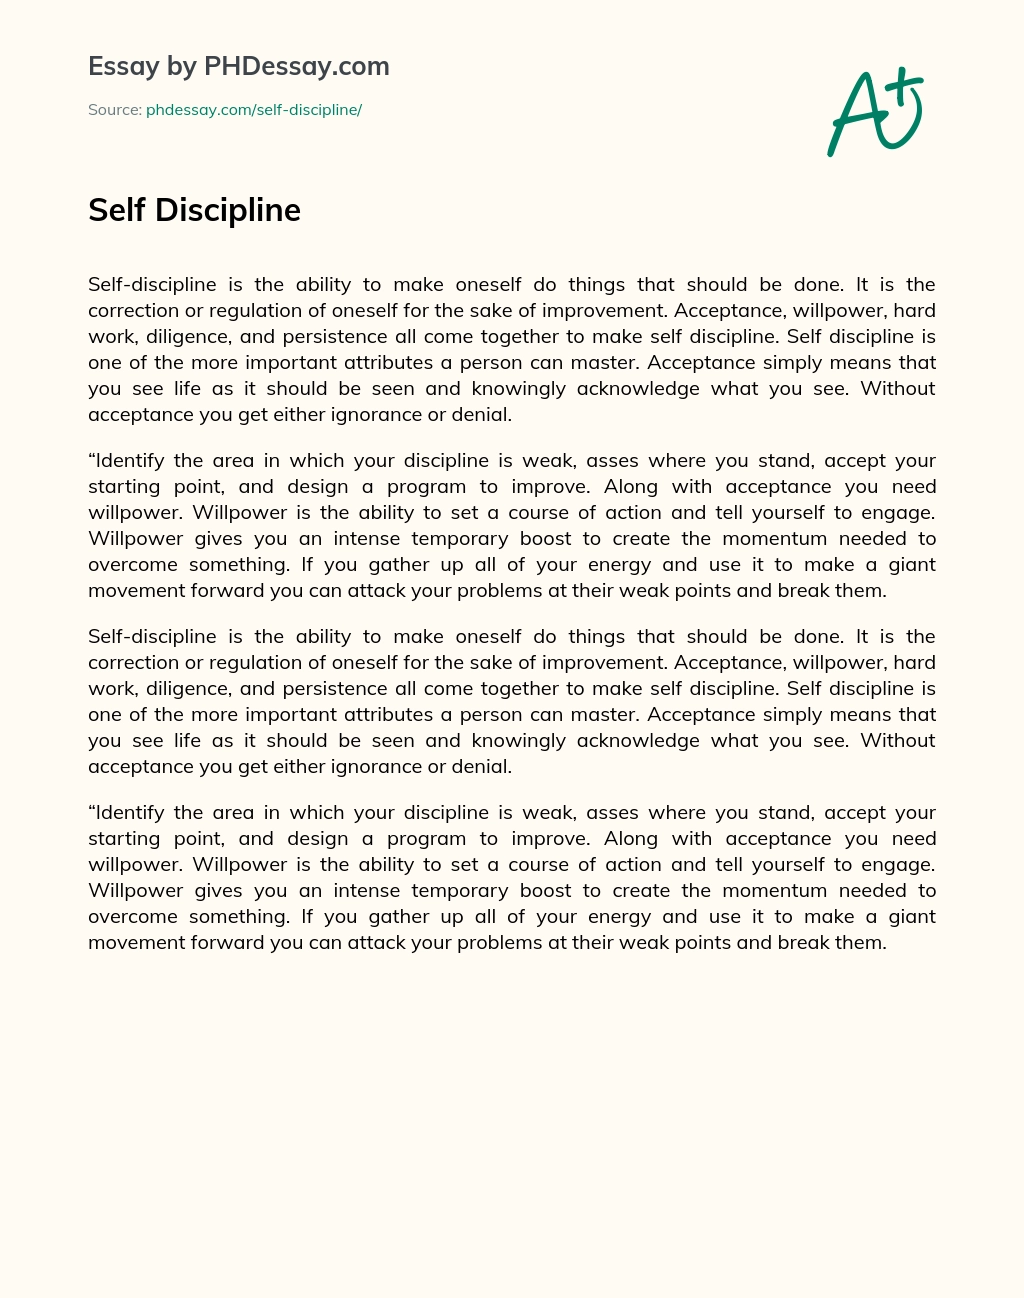 Self Discipline essay